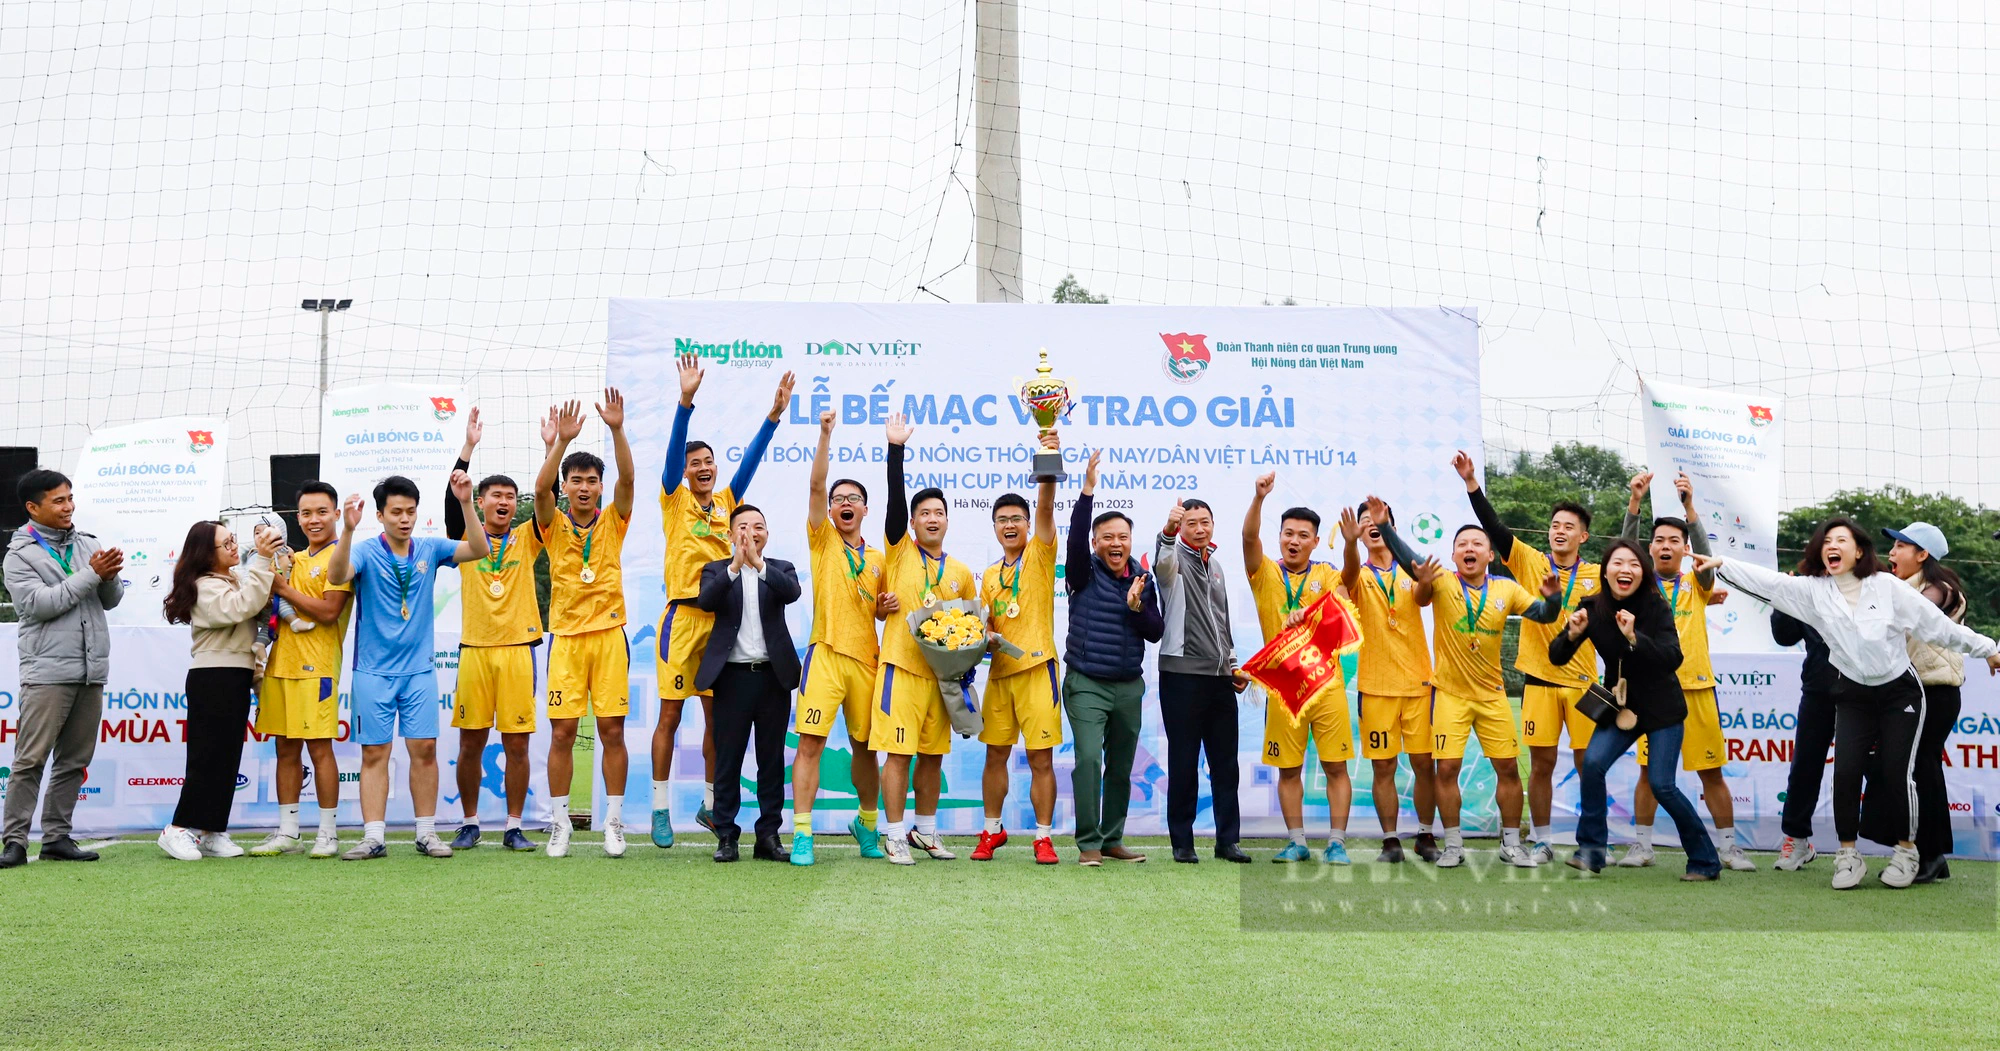 Hình ảnh Lễ bế mạc Giải bóng đá Báo Nông thôn Ngày nay/Dân Việt năm 2023 - Ảnh 12.